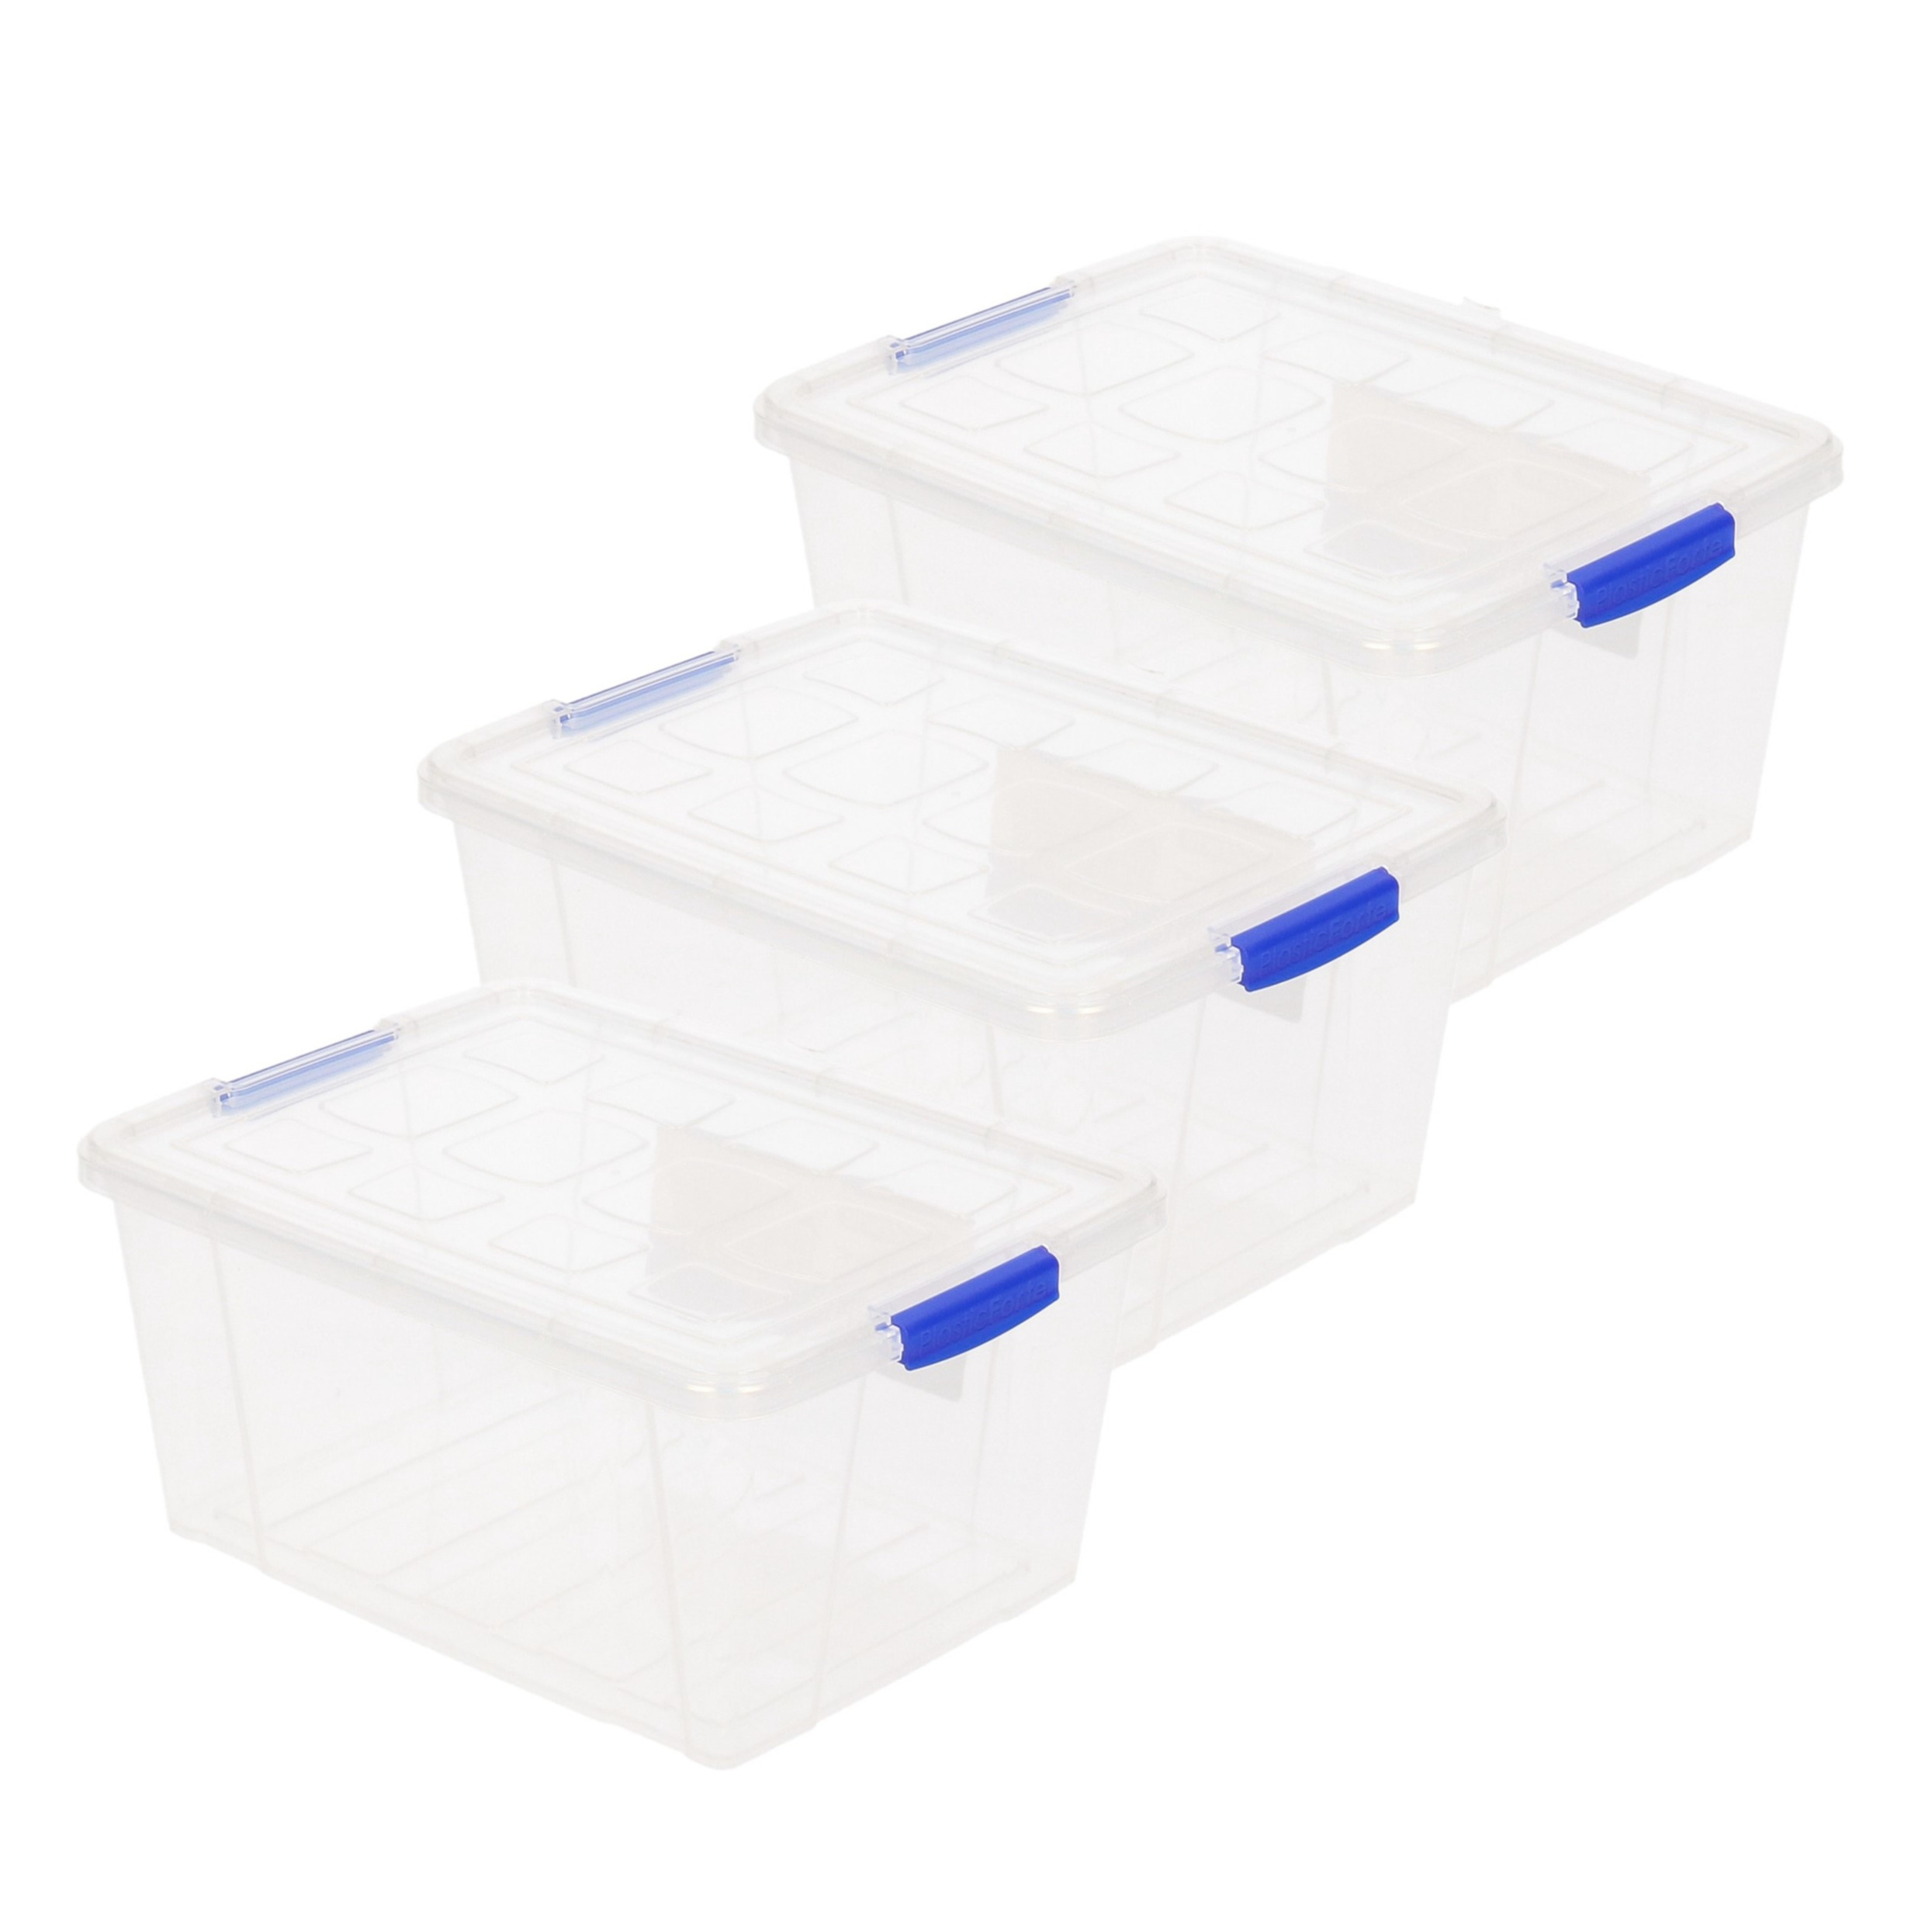 3x stuks opslagboxen-bakken-organizers met deksel 16 liter 40 x 30 x 21 cm transparant plastic